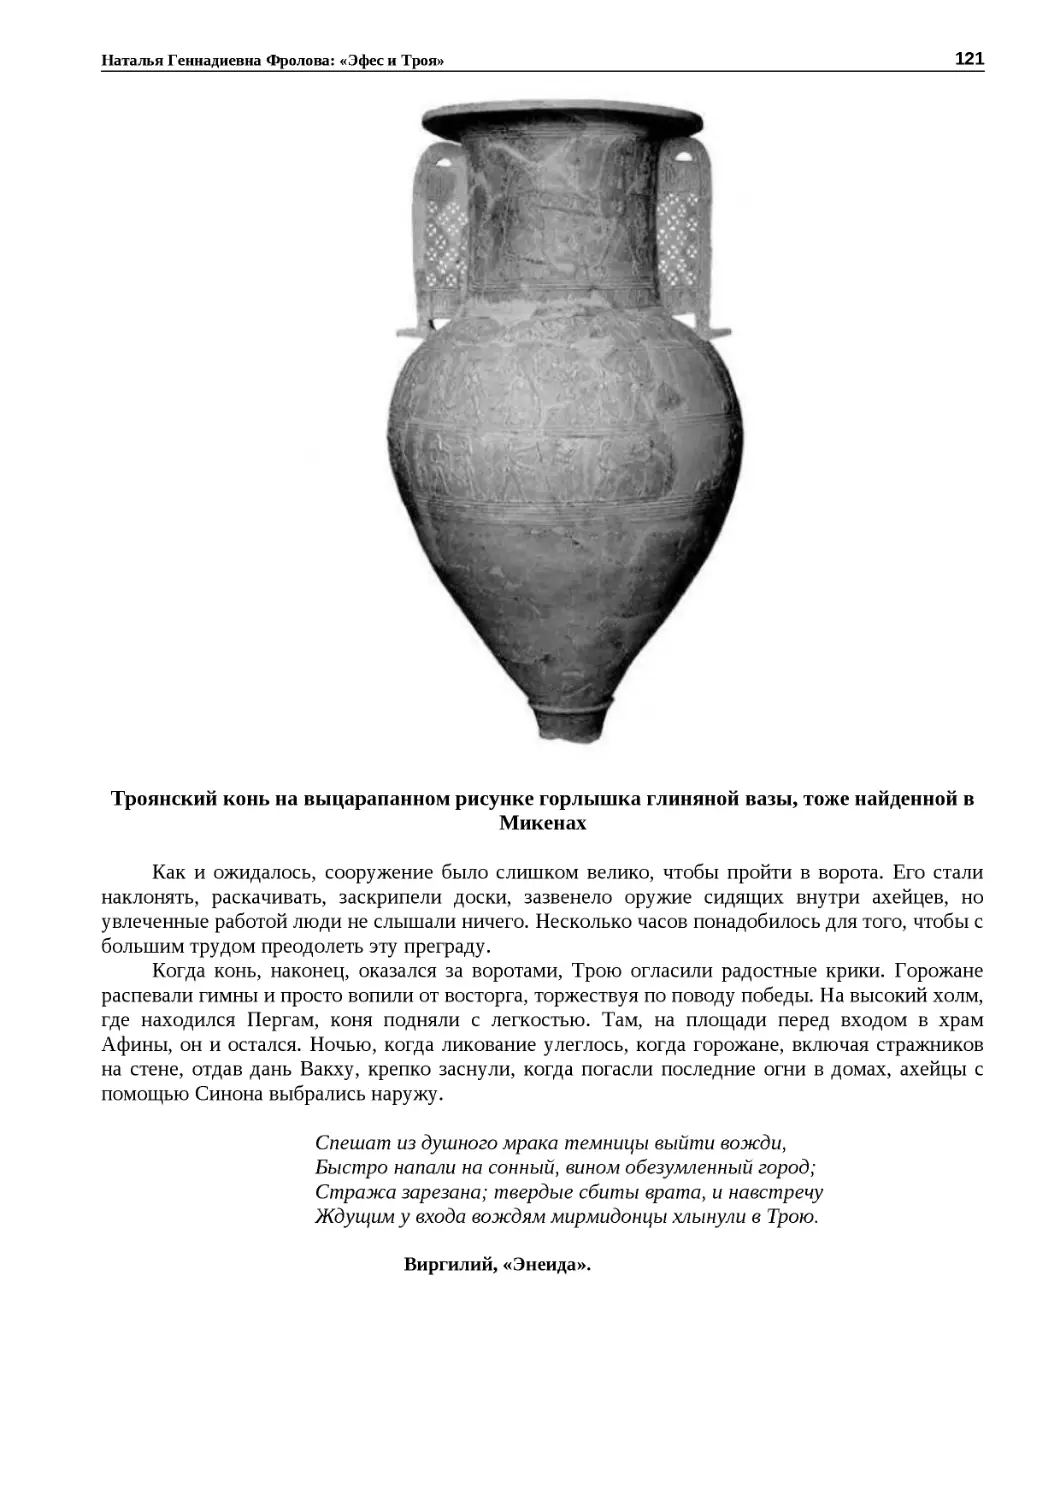 ﻿Троянский конь на выцарапанном рисунке горлышка глиняной вазы, тоже найденной в Микена